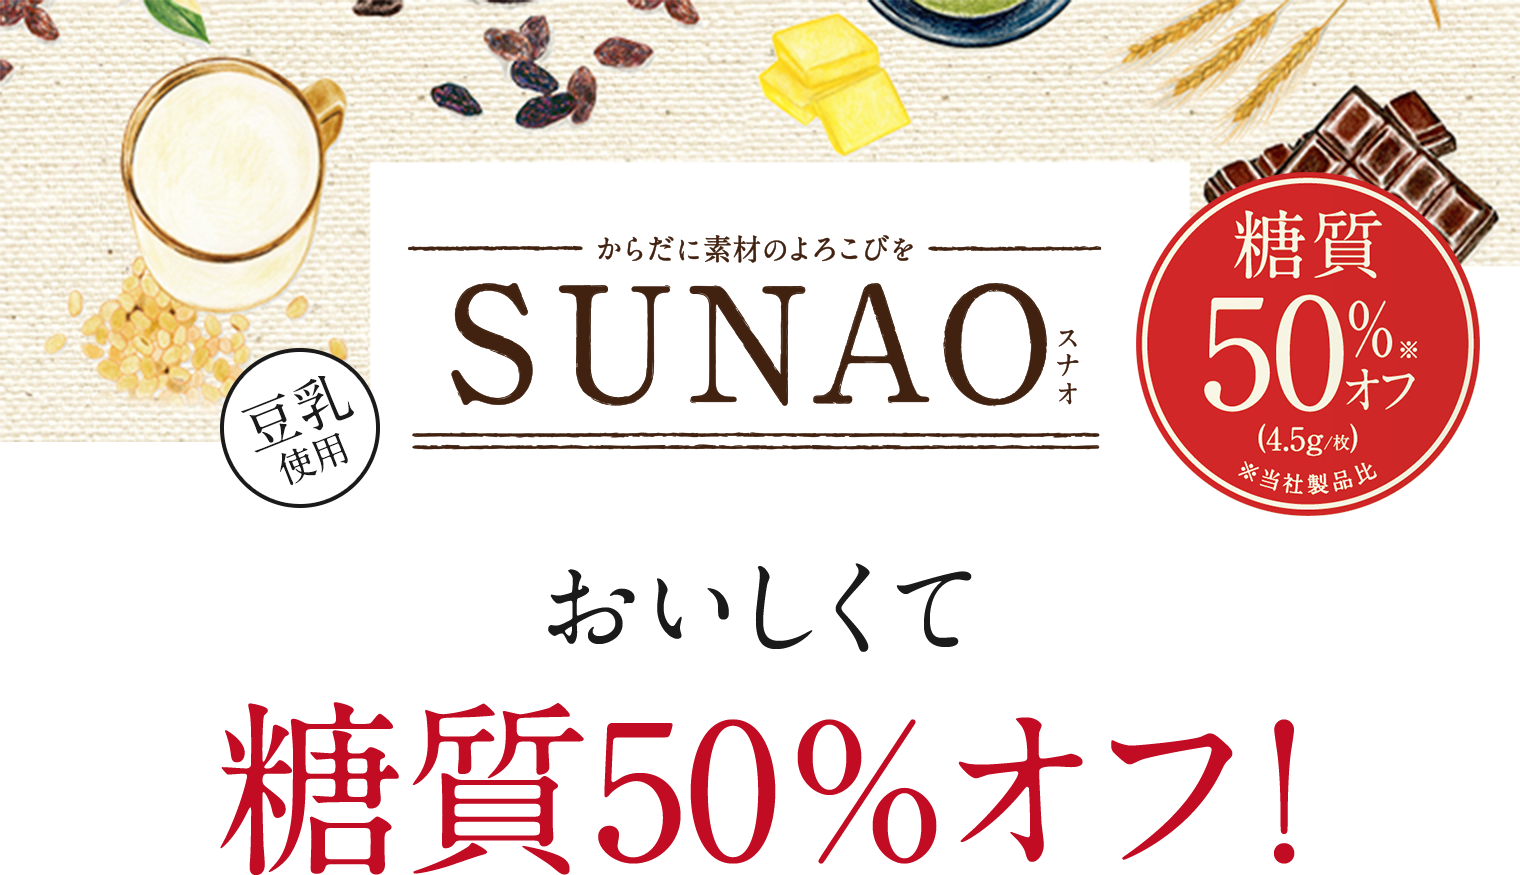 sunao おいしくて糖質50%オフ!